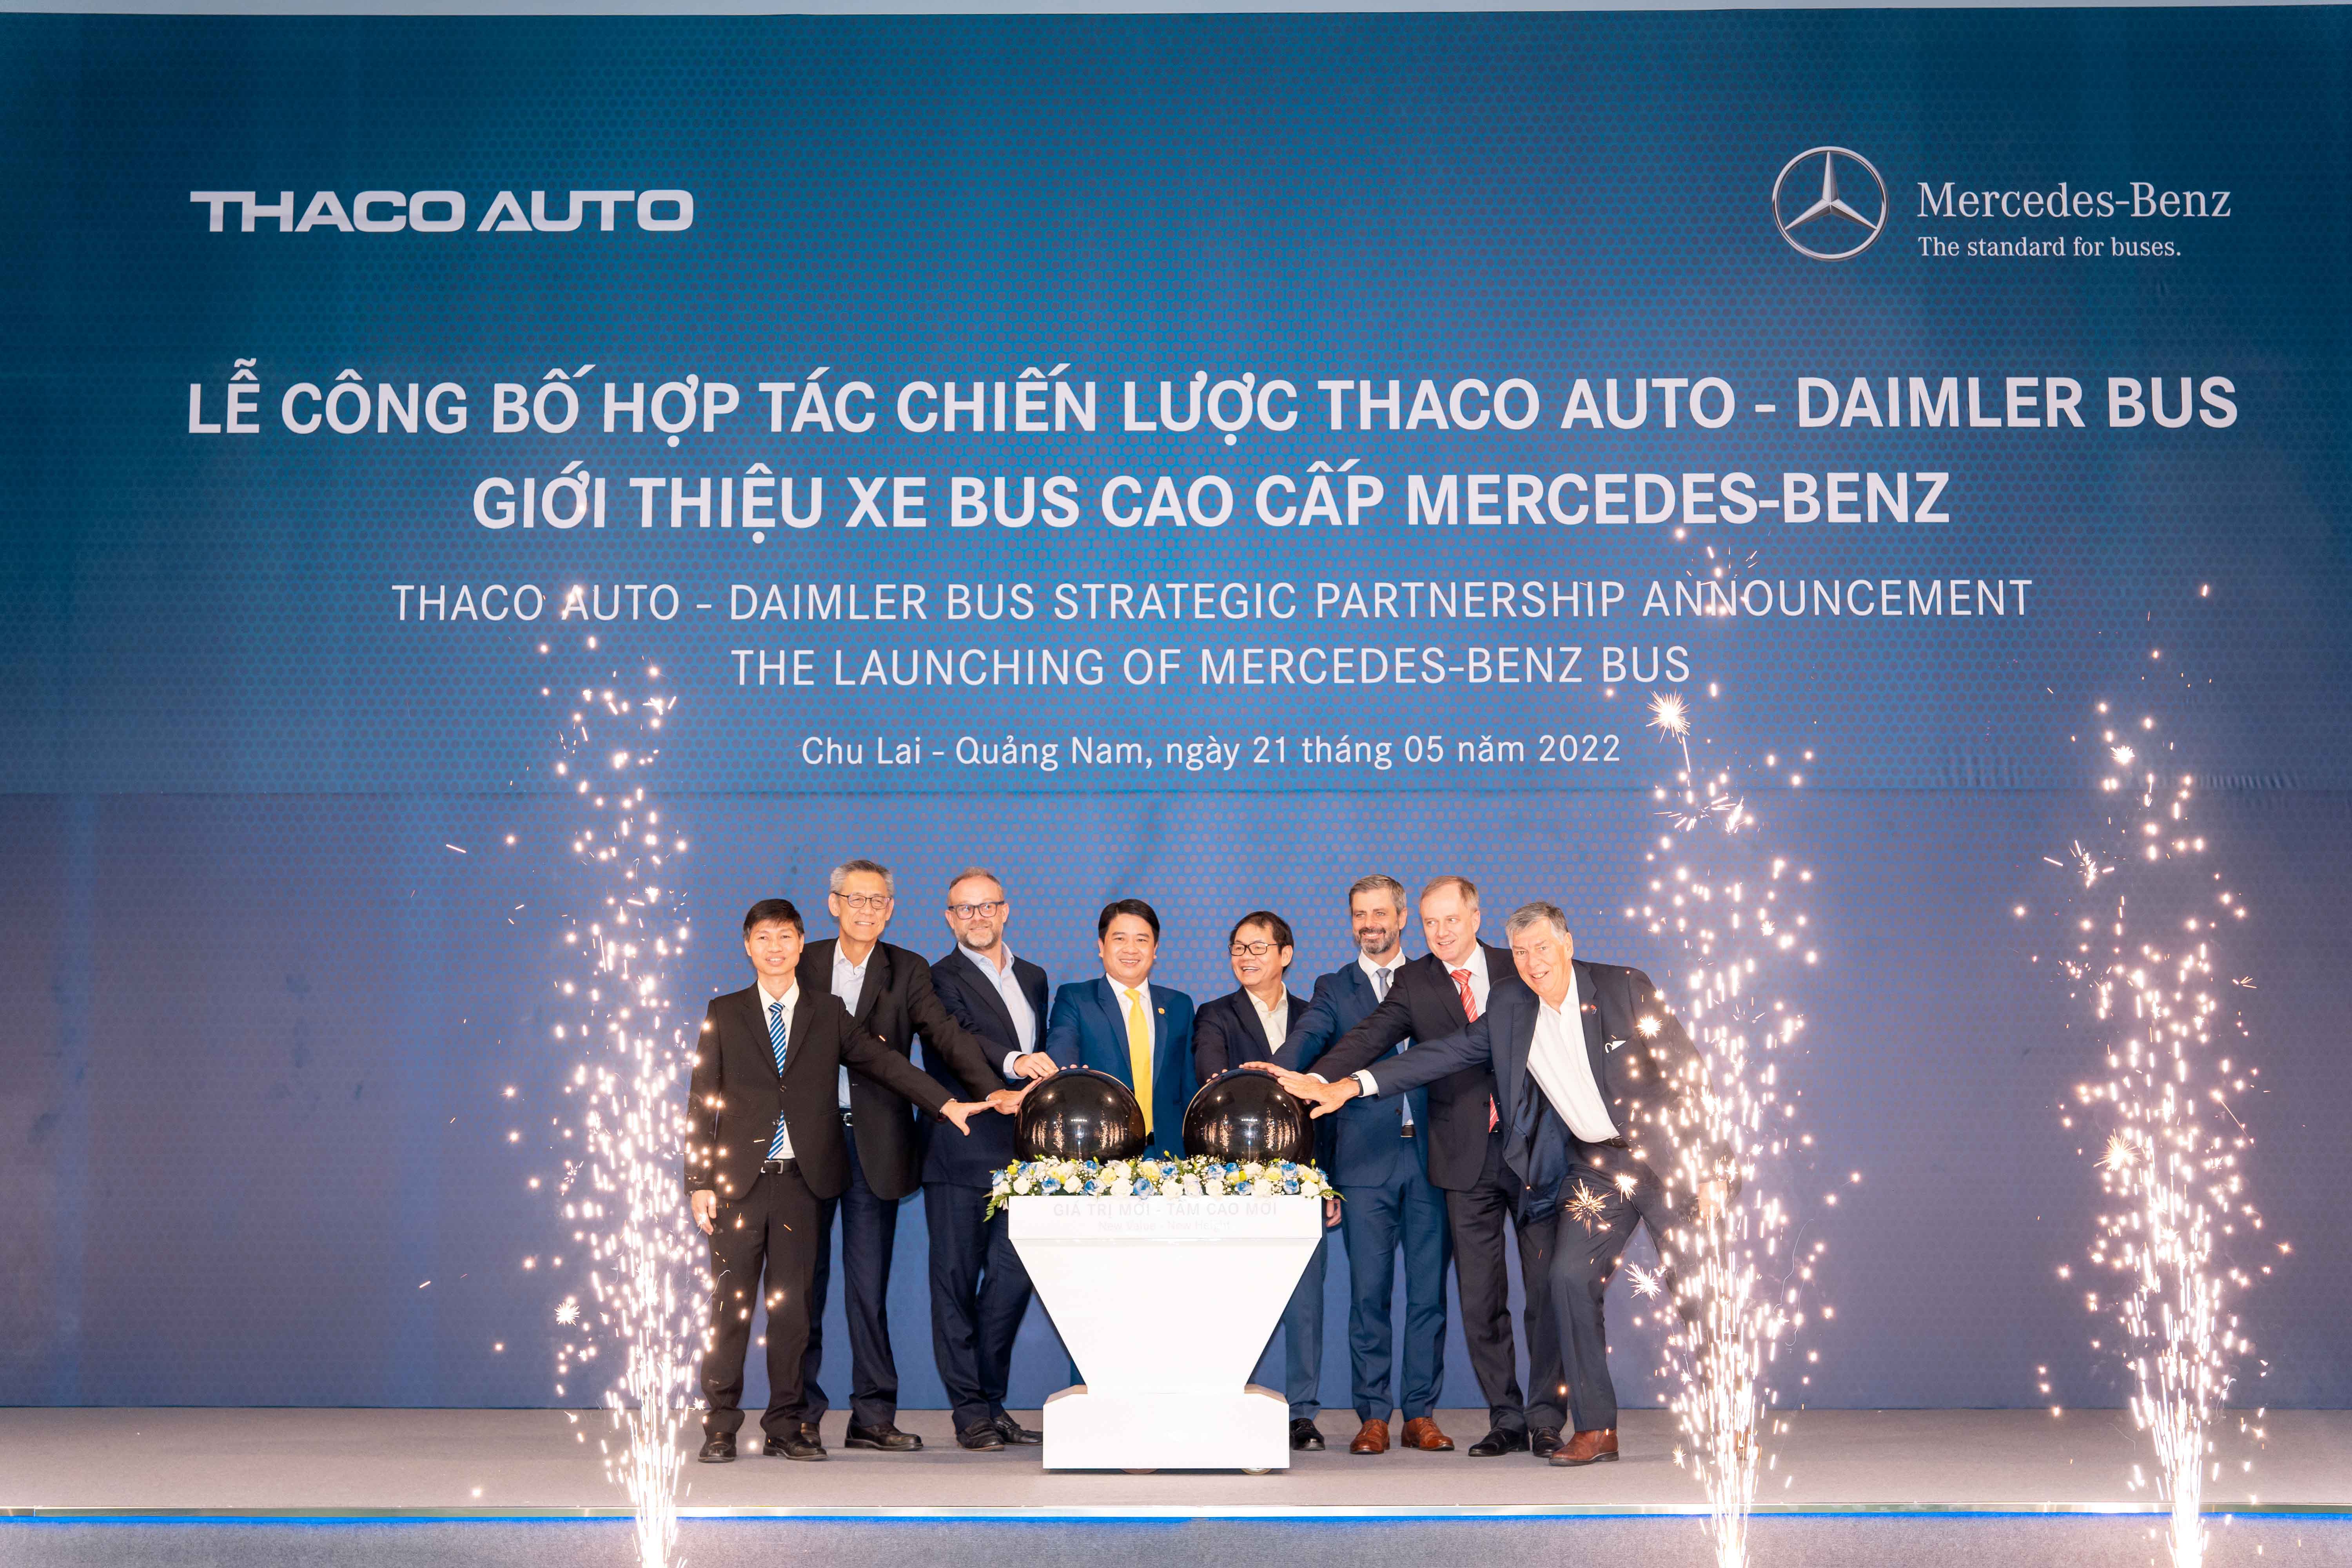 Chụp hình nhãn hàng - Giới thiệu xe bus cao cấp Mercedes-benz